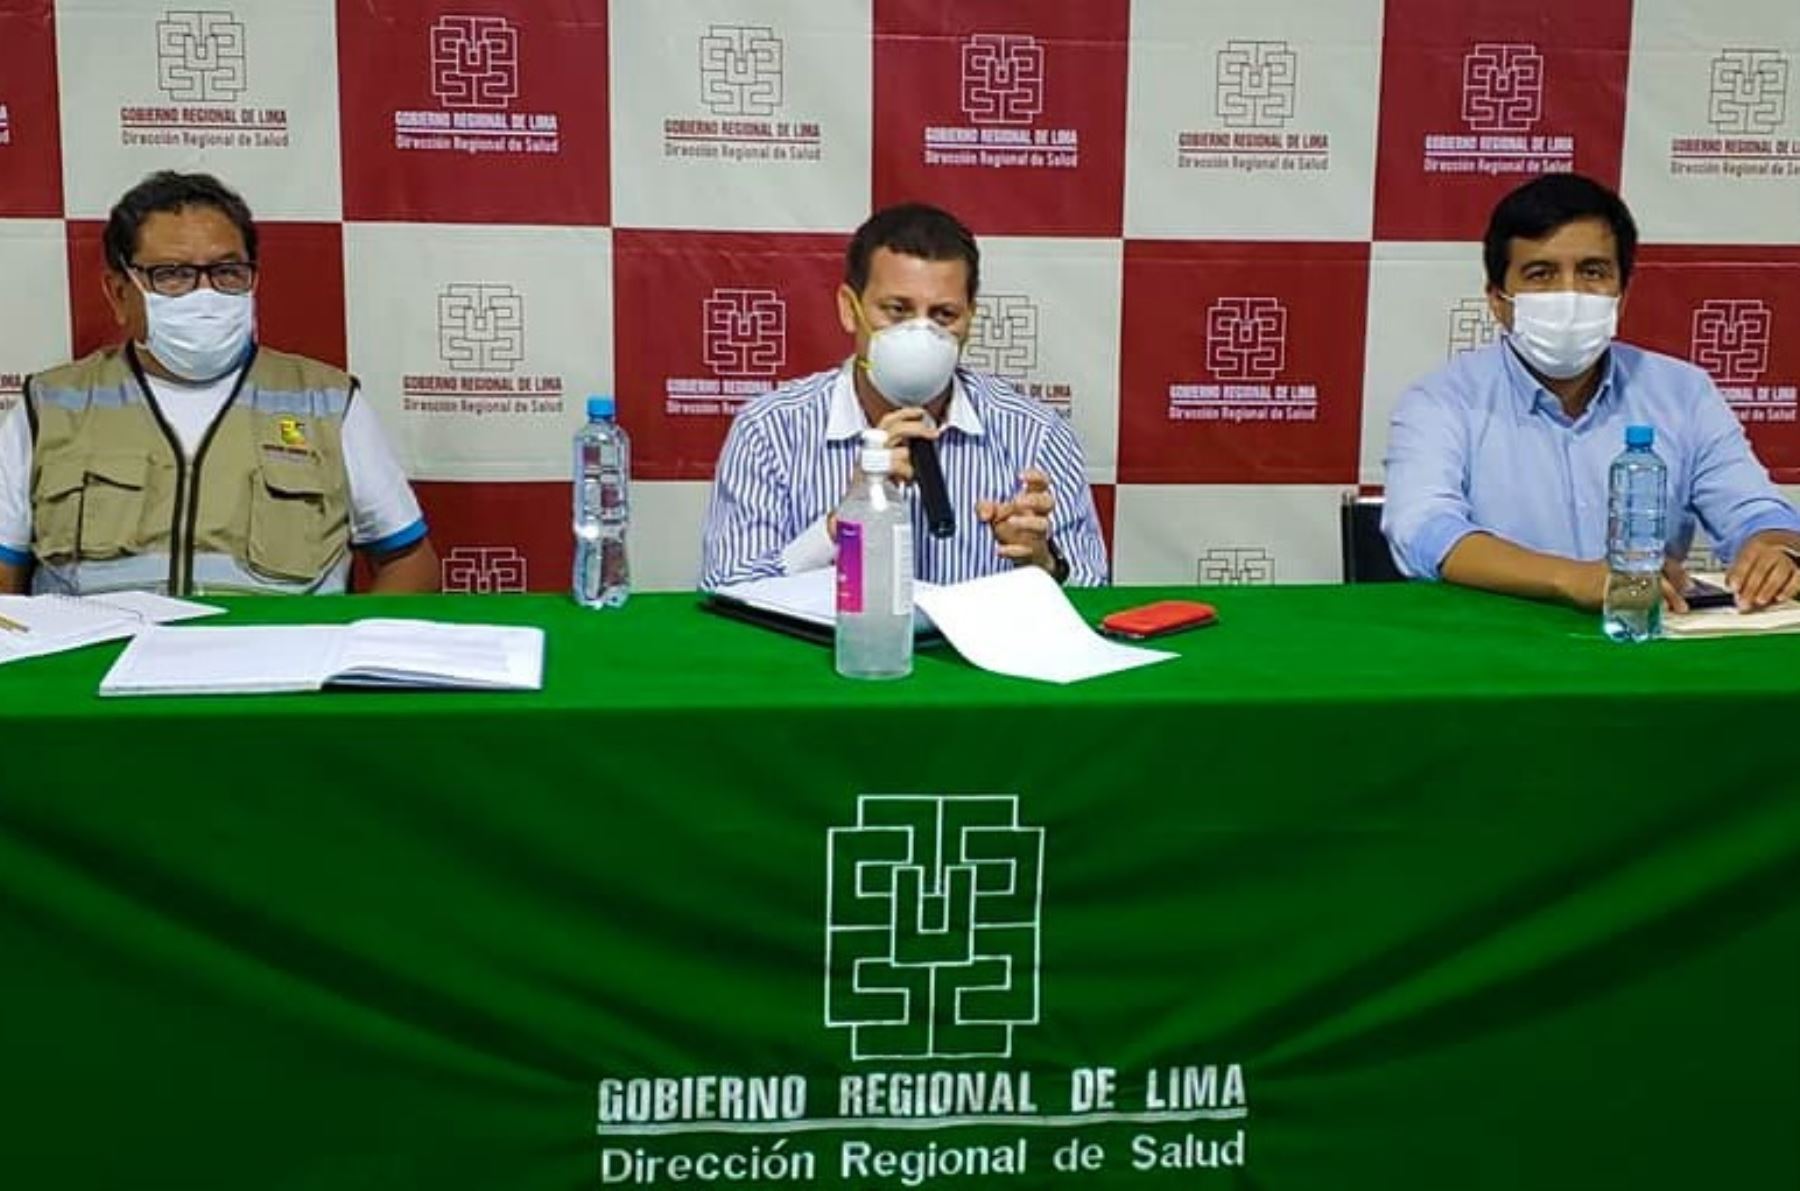 El Comando Covid-19 de la Región Lima adopta acciones urgentes para contener el avance de la pandemia del coronavirus.